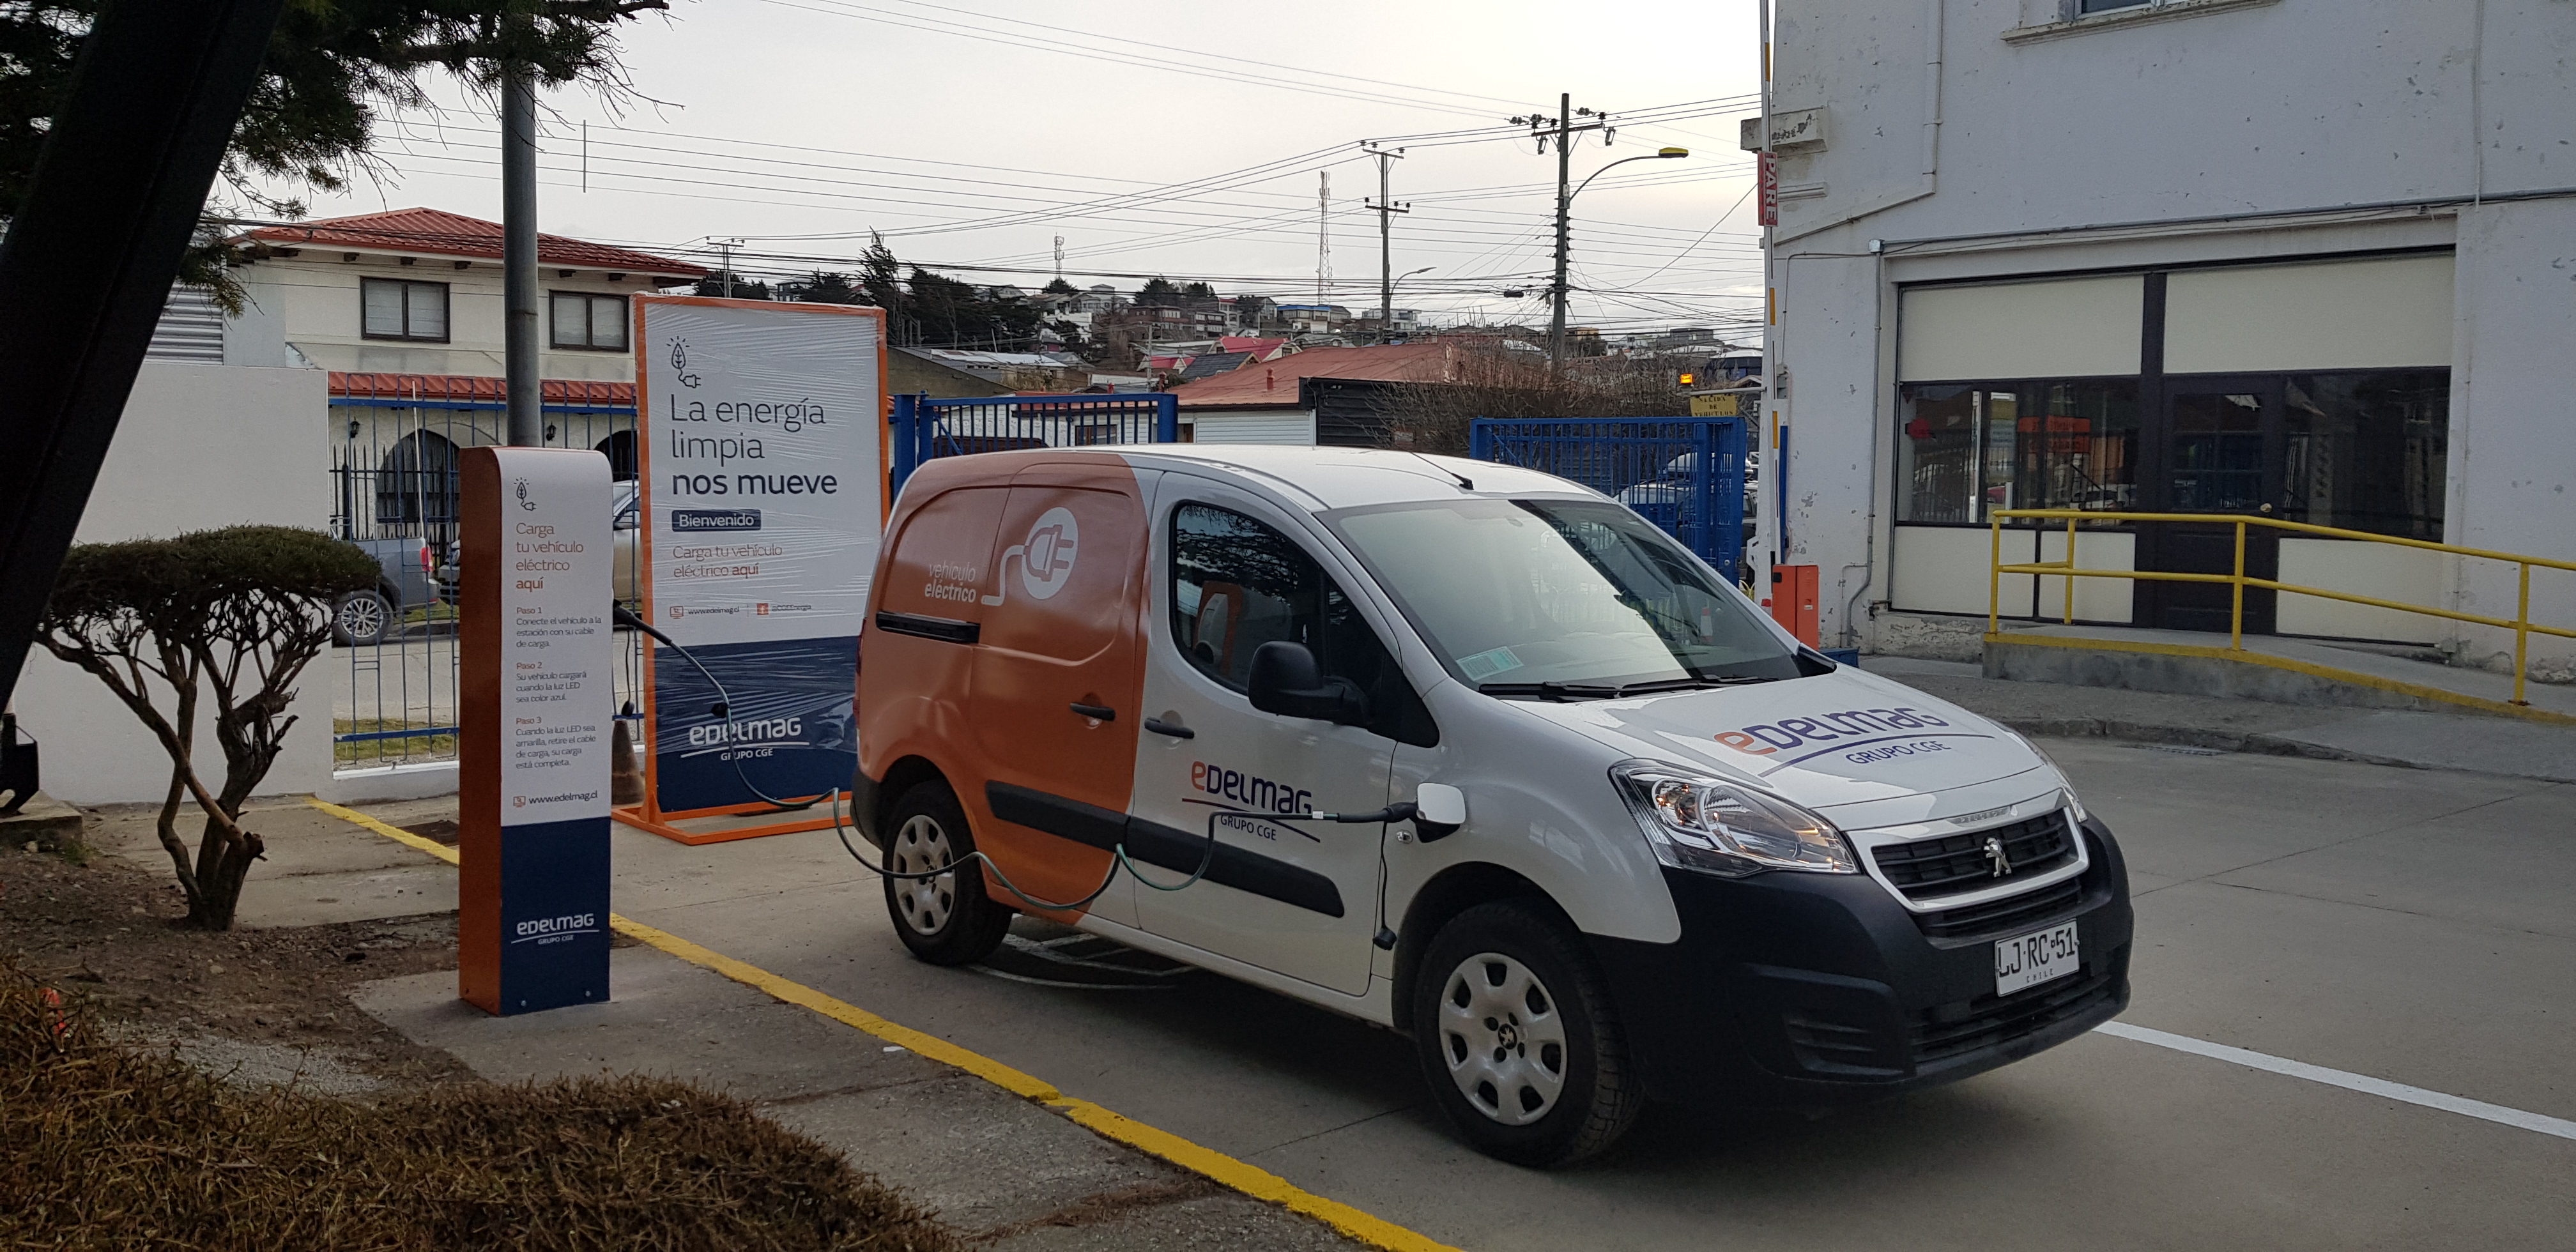 EDELMAG pone en servicio en Punta Arenas el primer punto de carga para vehículos eléctricos